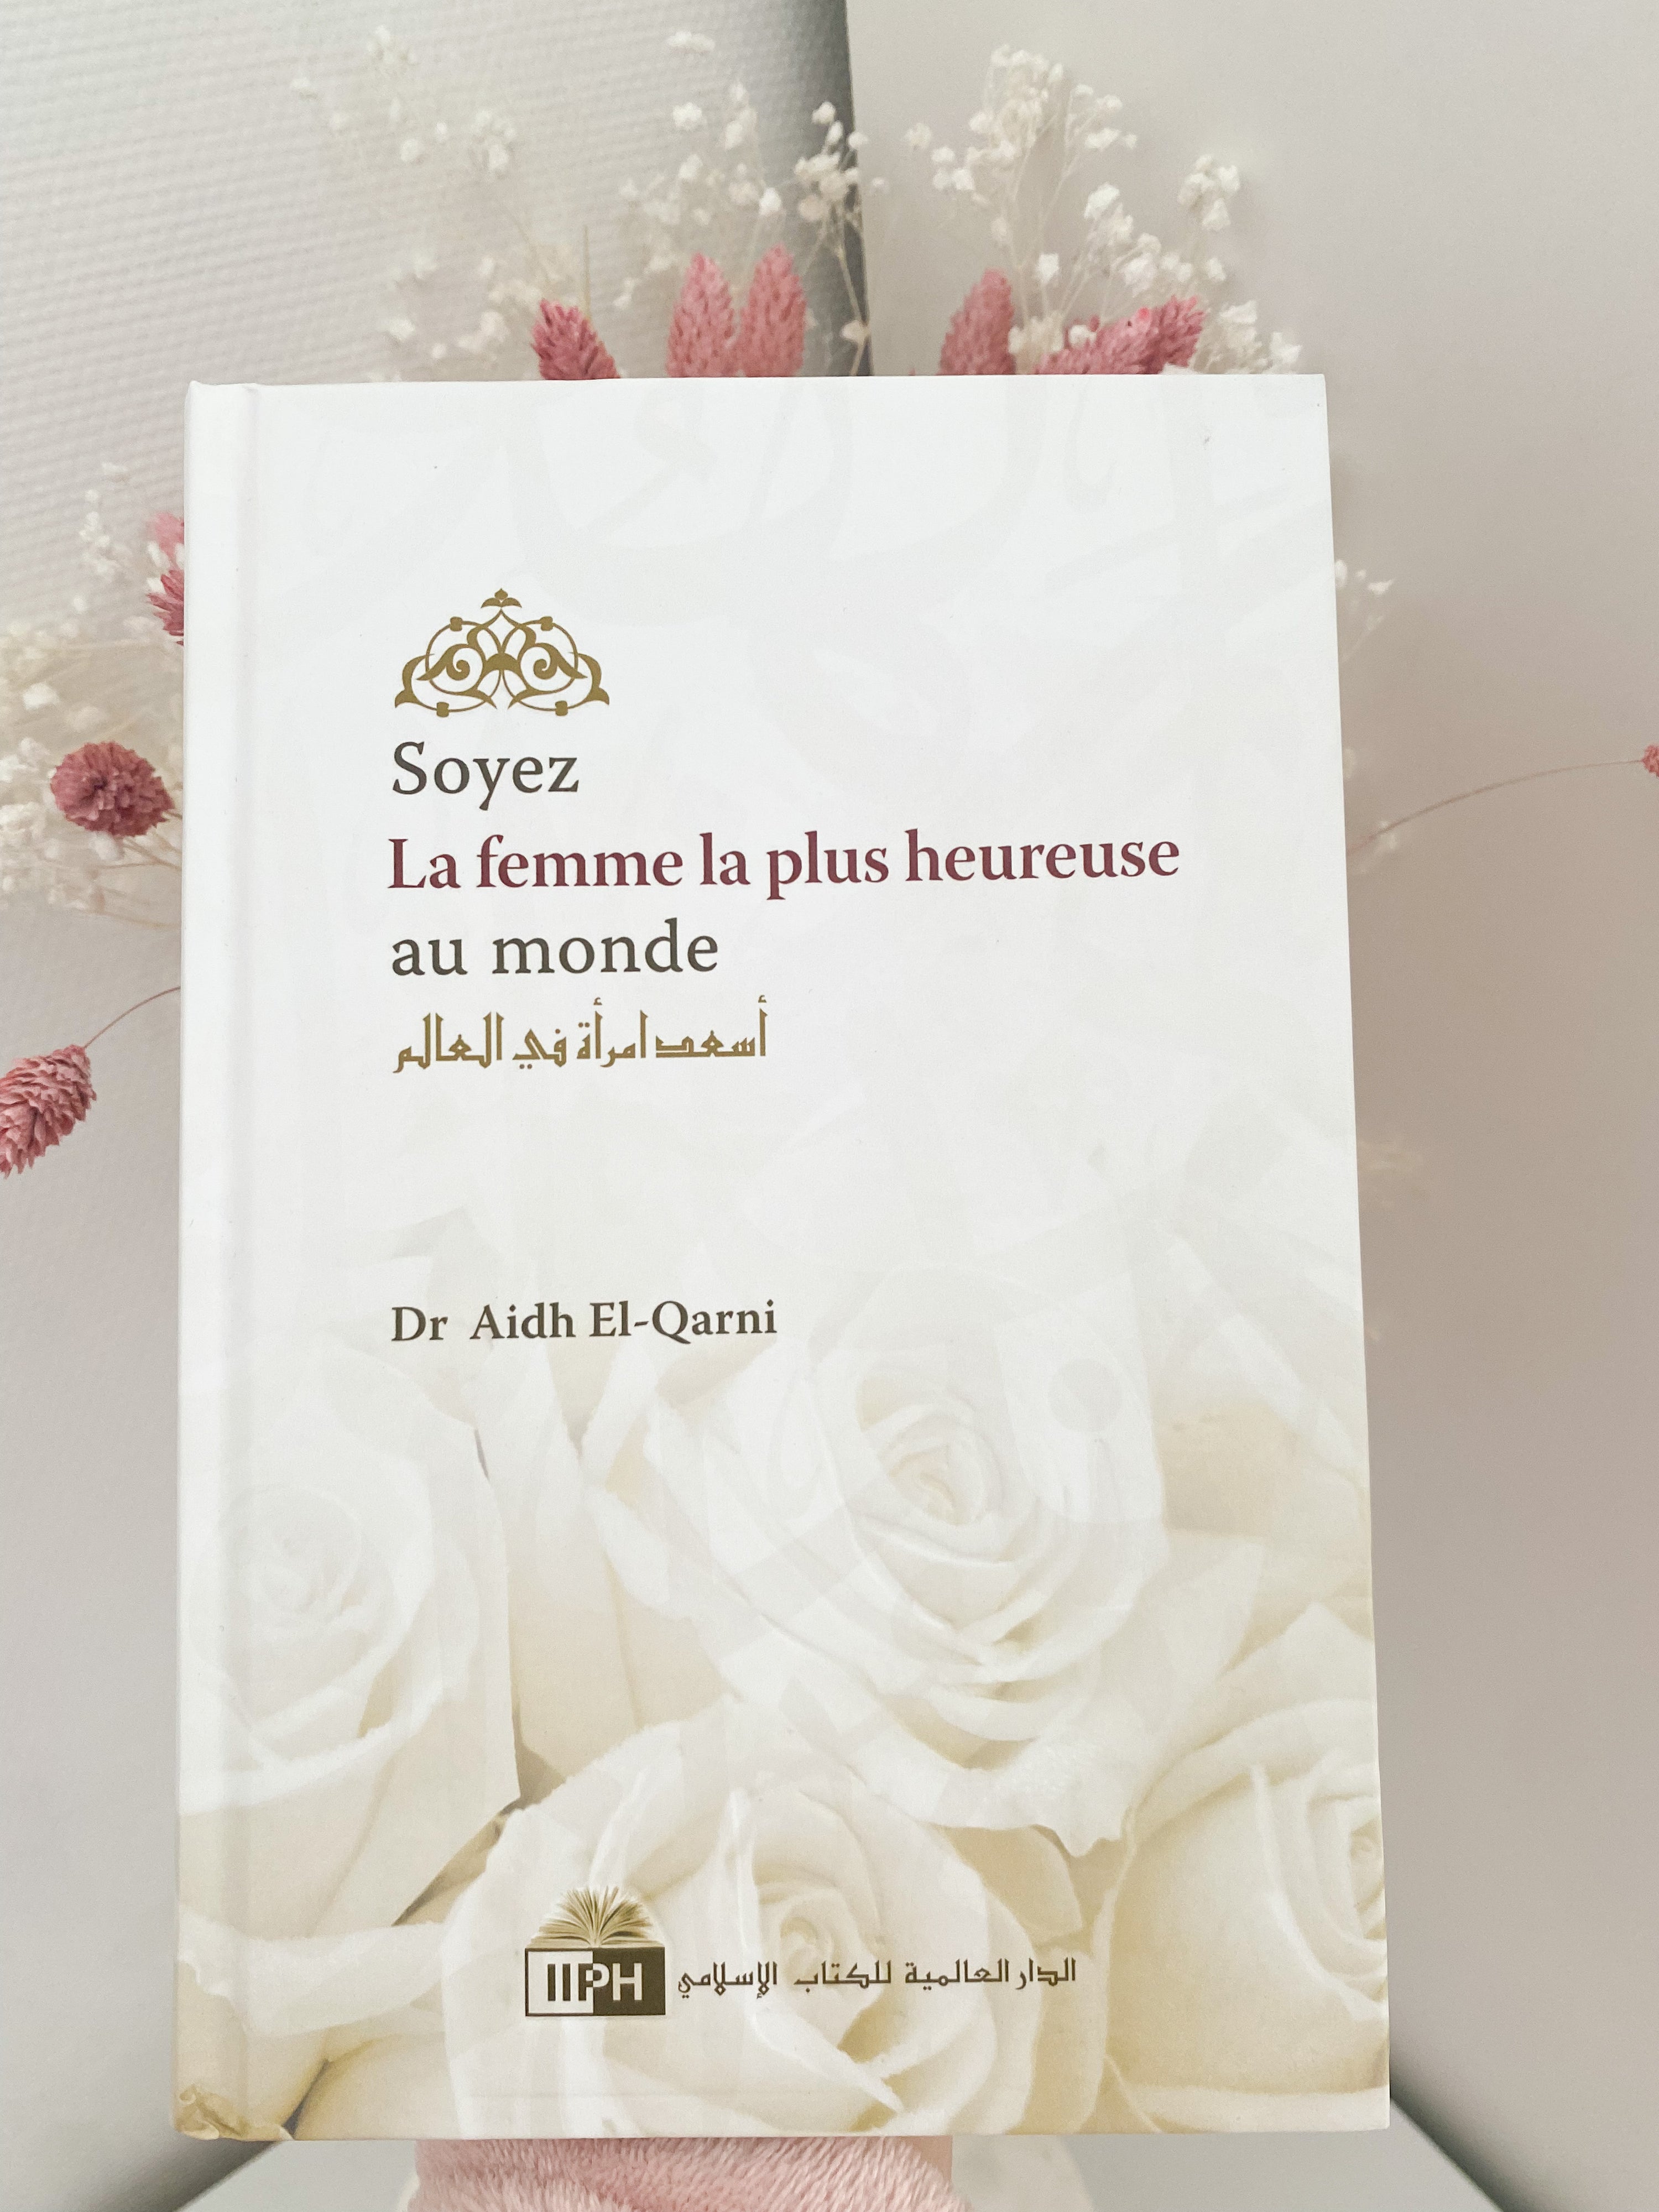 Soyez La Femme La Plus Heureuse Du Monde, De Aidh El-Qarni, 2ème Édition Française (2012)